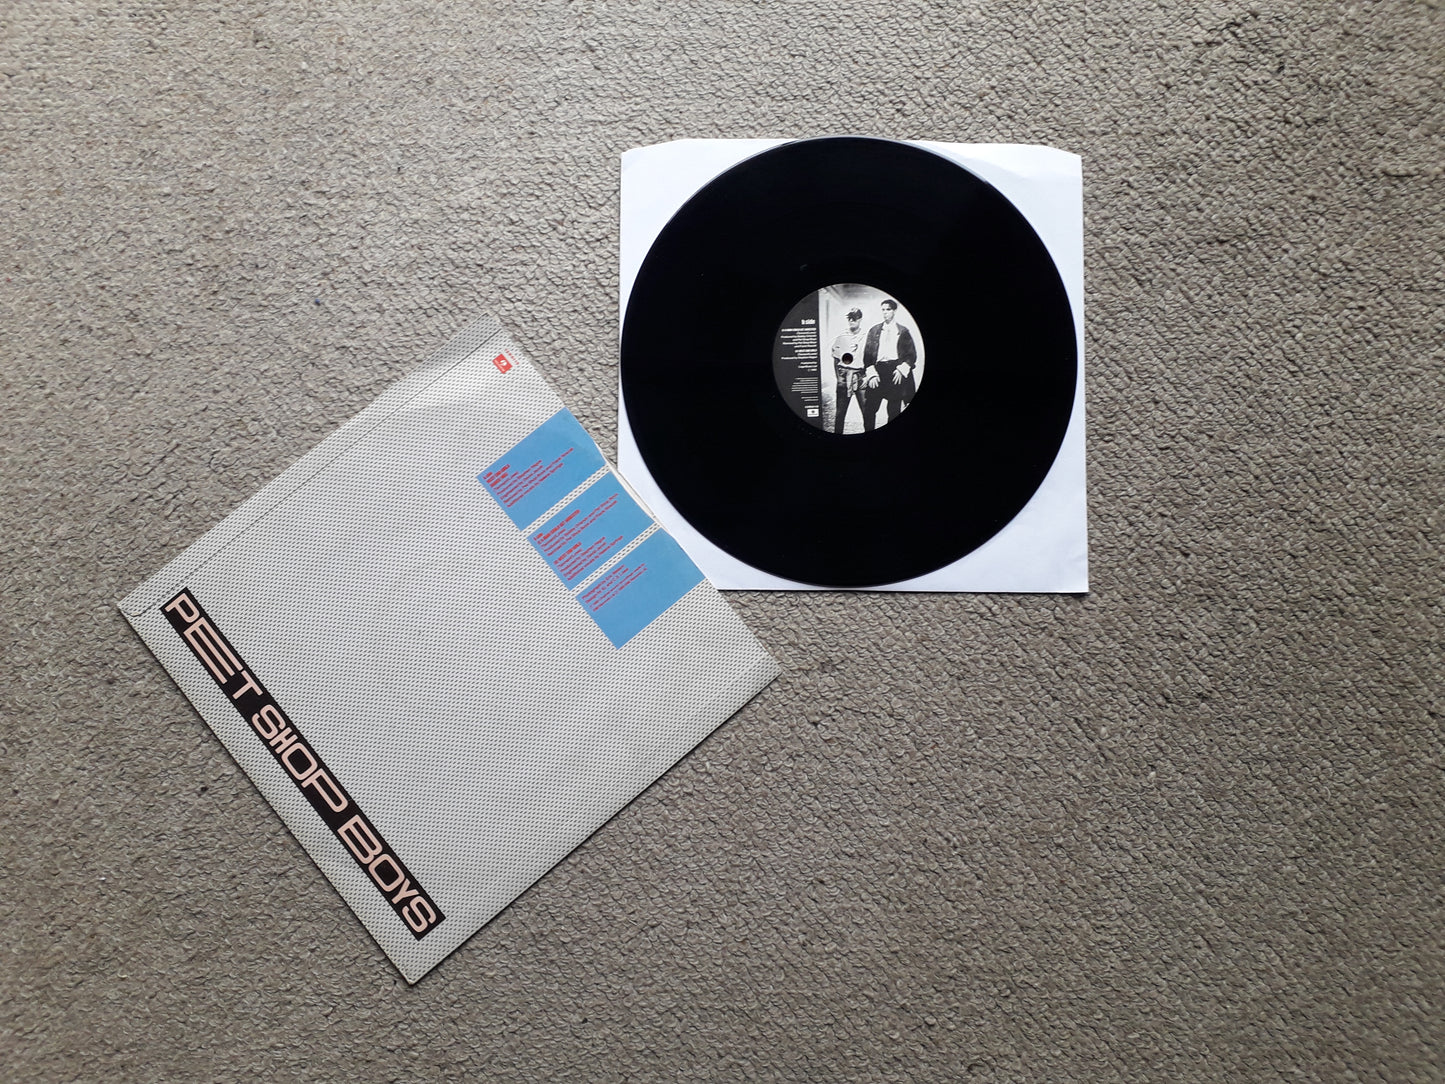 Pet Shop Boys-West End Girls 12" EP (12 R 6115)